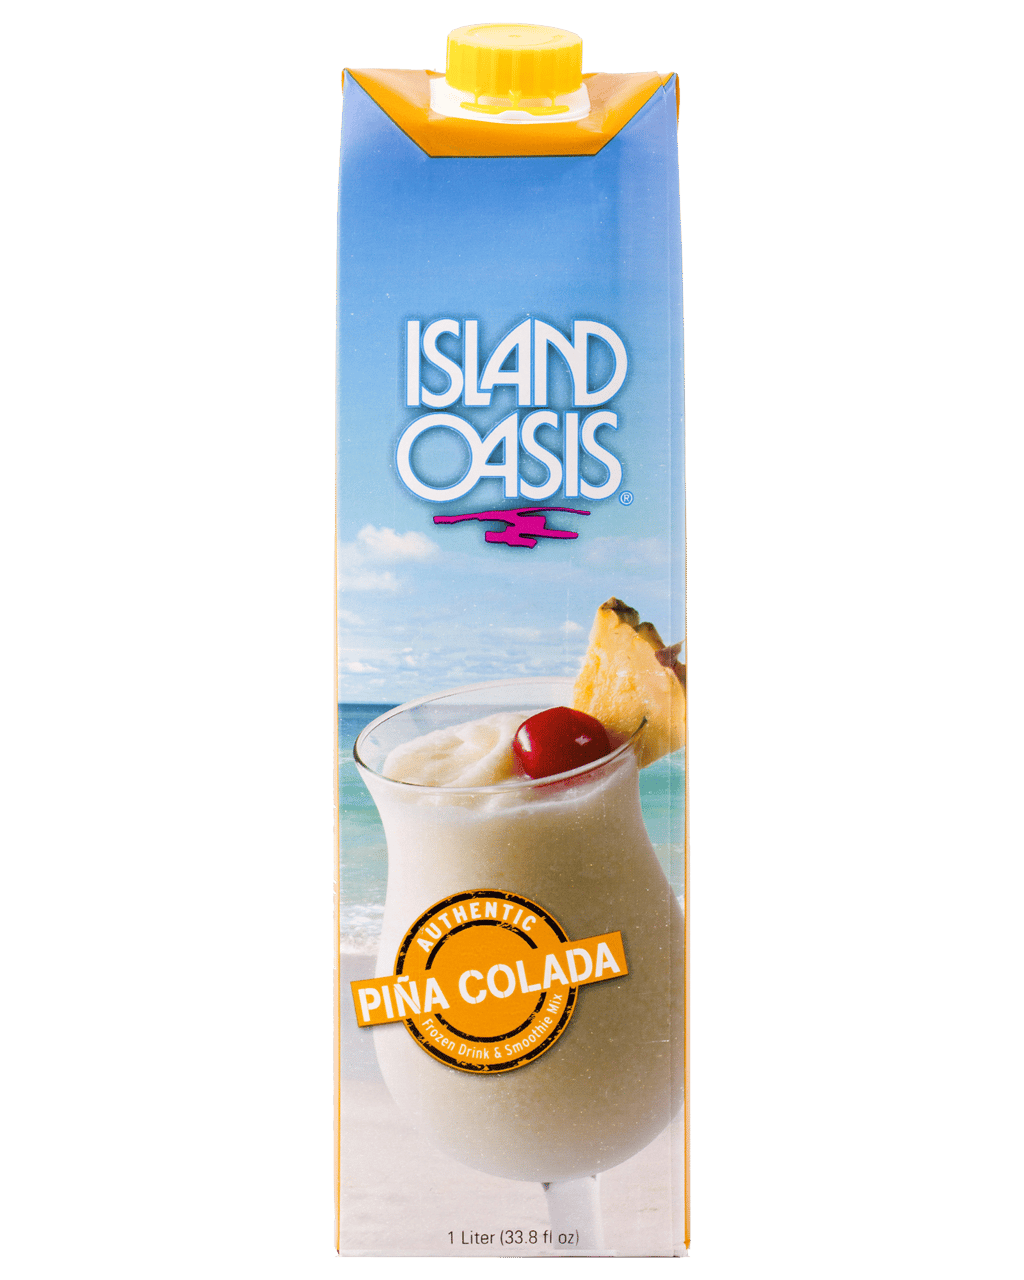 Island oasis pina colada